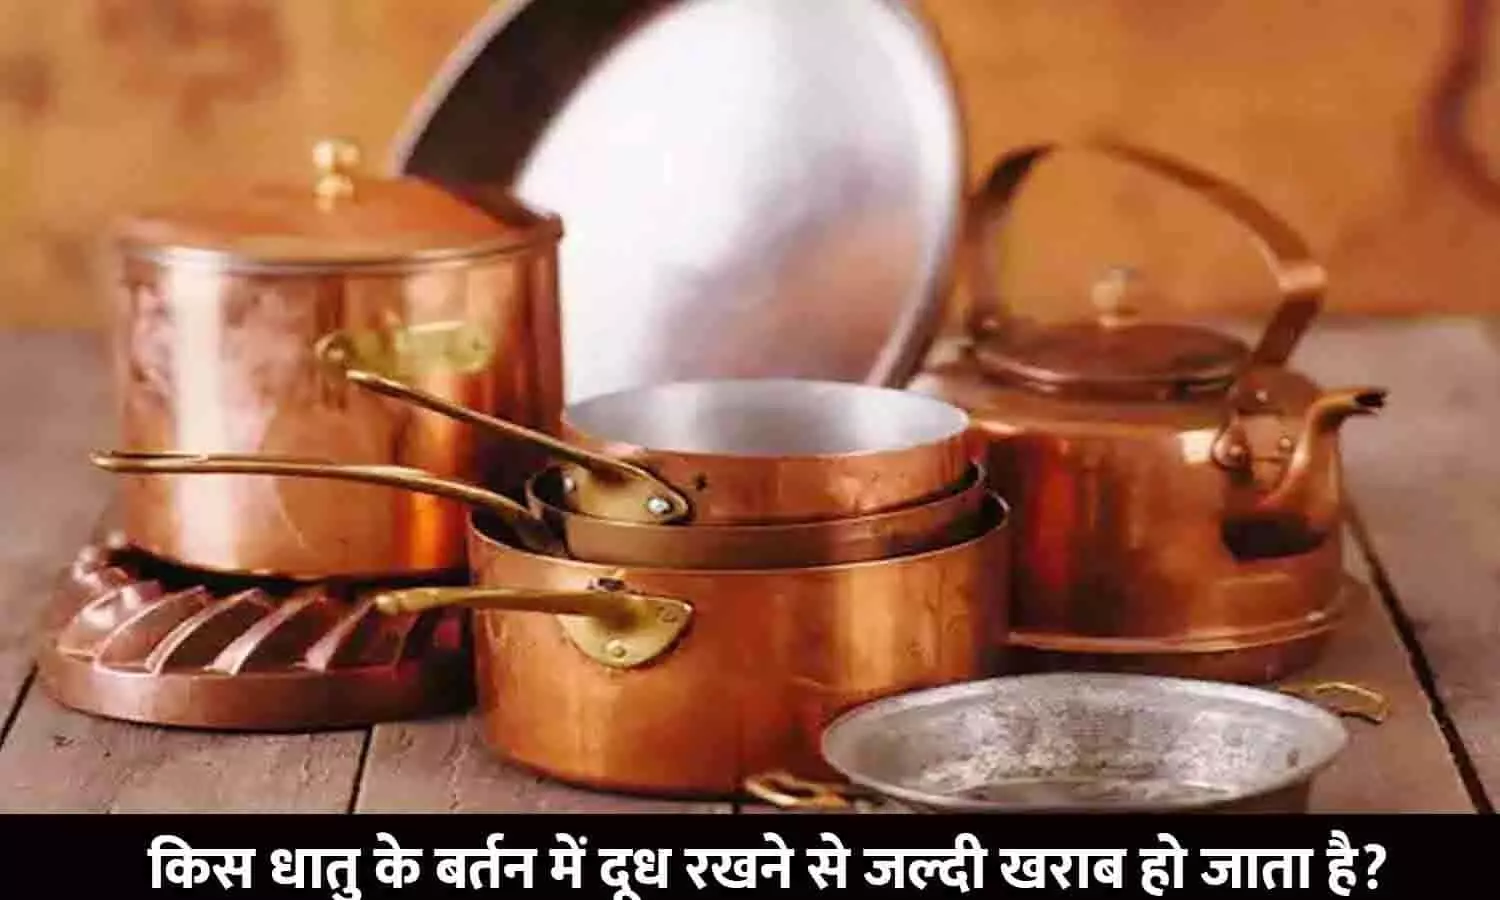 Kis Dhatu Ke Bartan Me Doodh Rakhne Se Jaldi Kharab Ho Jata Hai | किस धातु के बर्तन में दूध रखने से जल्दी खराब हो जाता है?